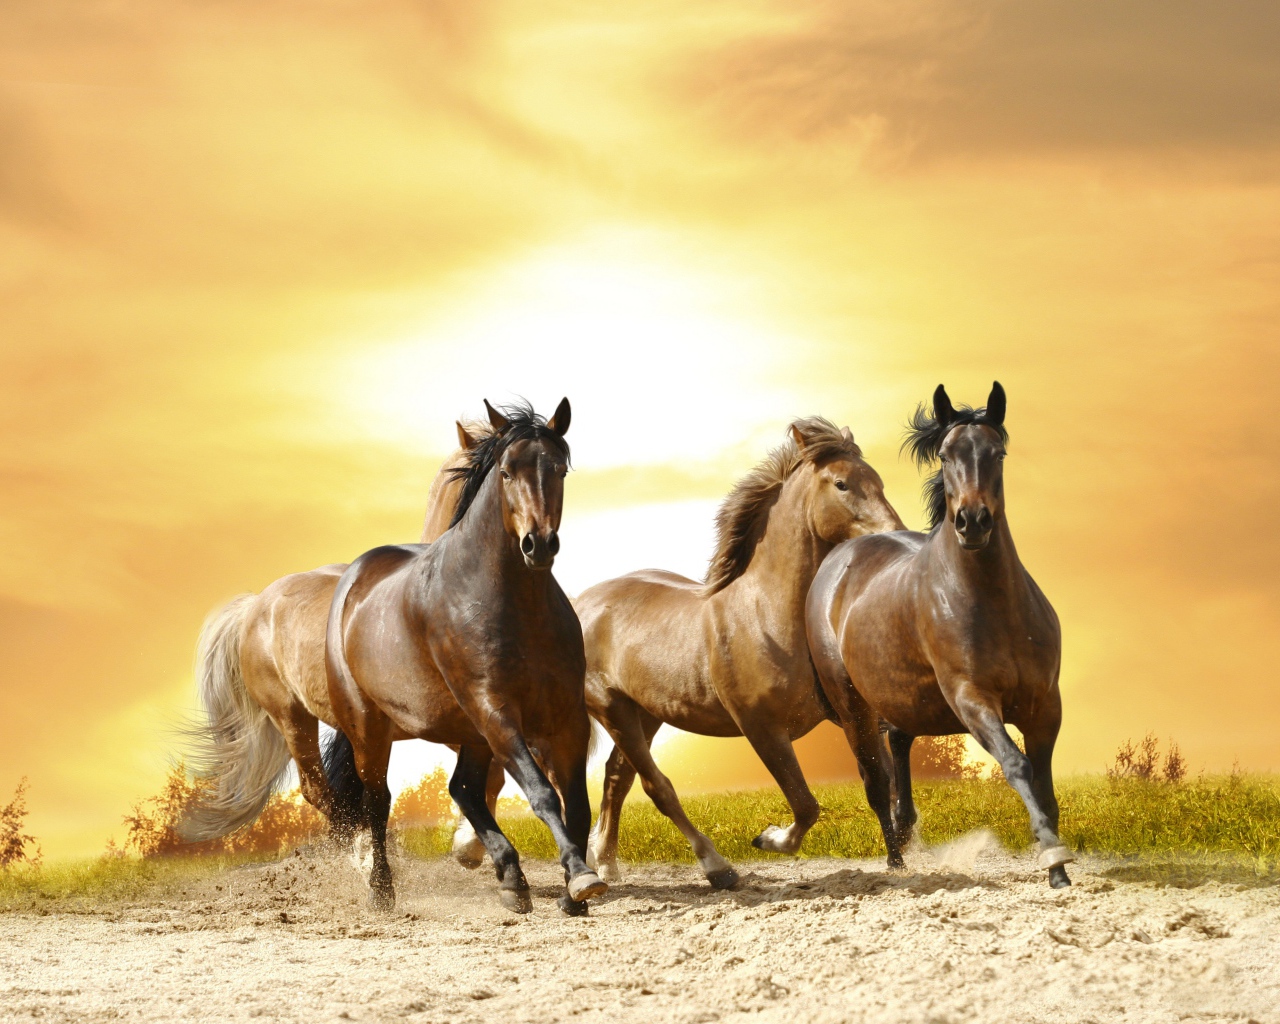 Табун лошадей скачет на закате солнца